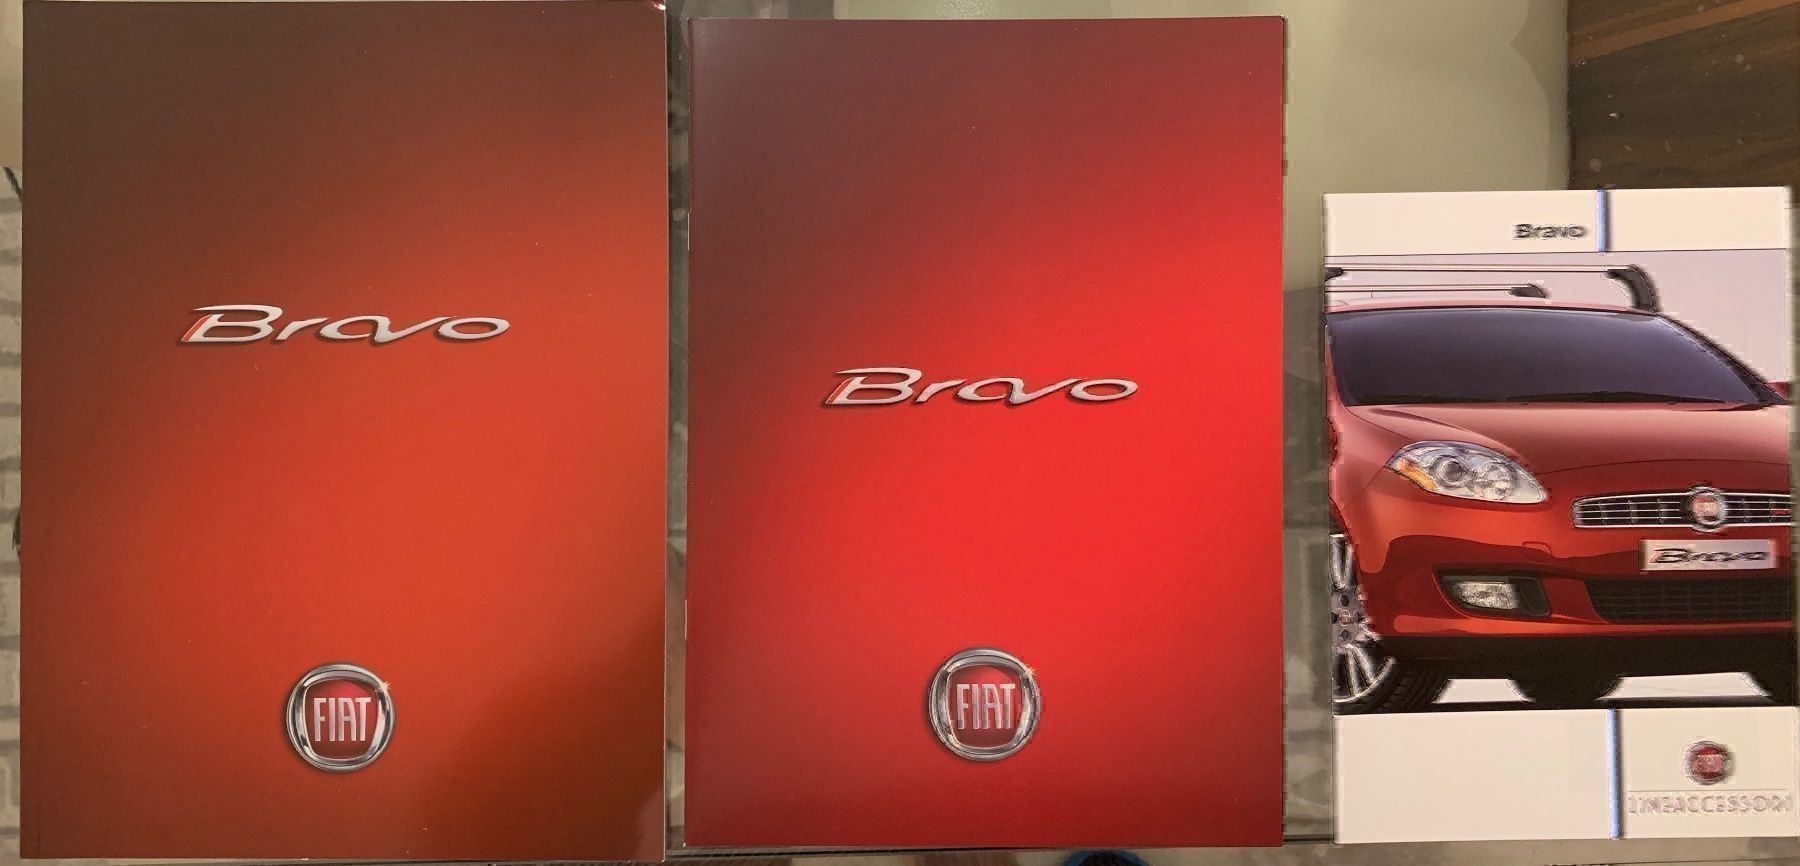 Fiat Bravo Verkausprospekt 2/2007 Set kaufen auf Ricardo